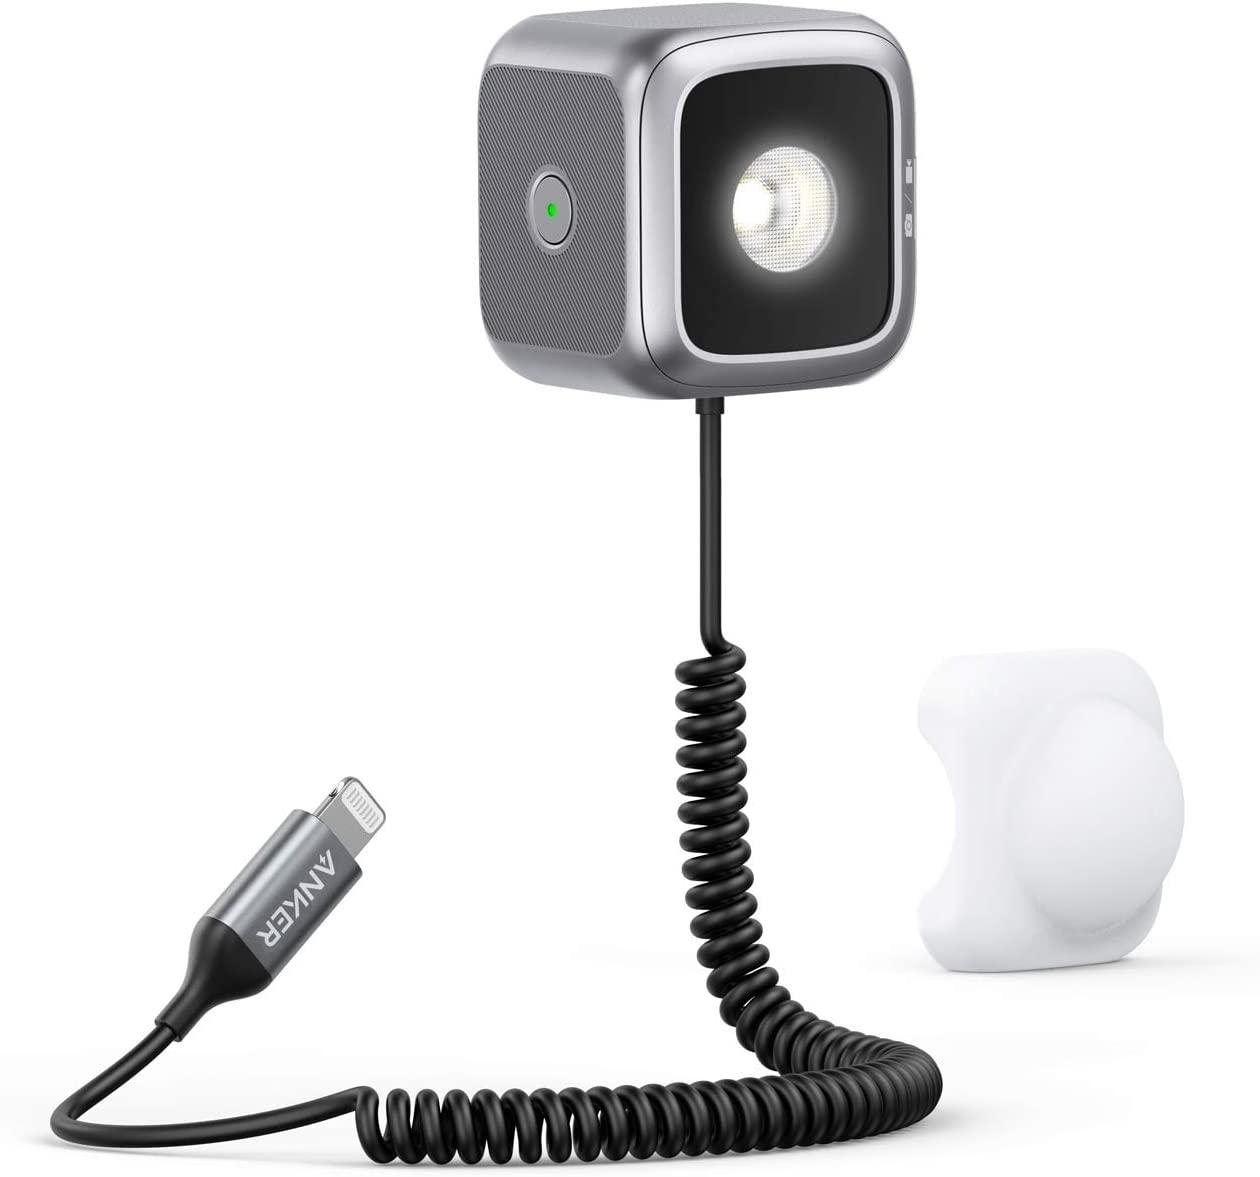 Anker iPhone Selfie LED Light Cube for $12.99